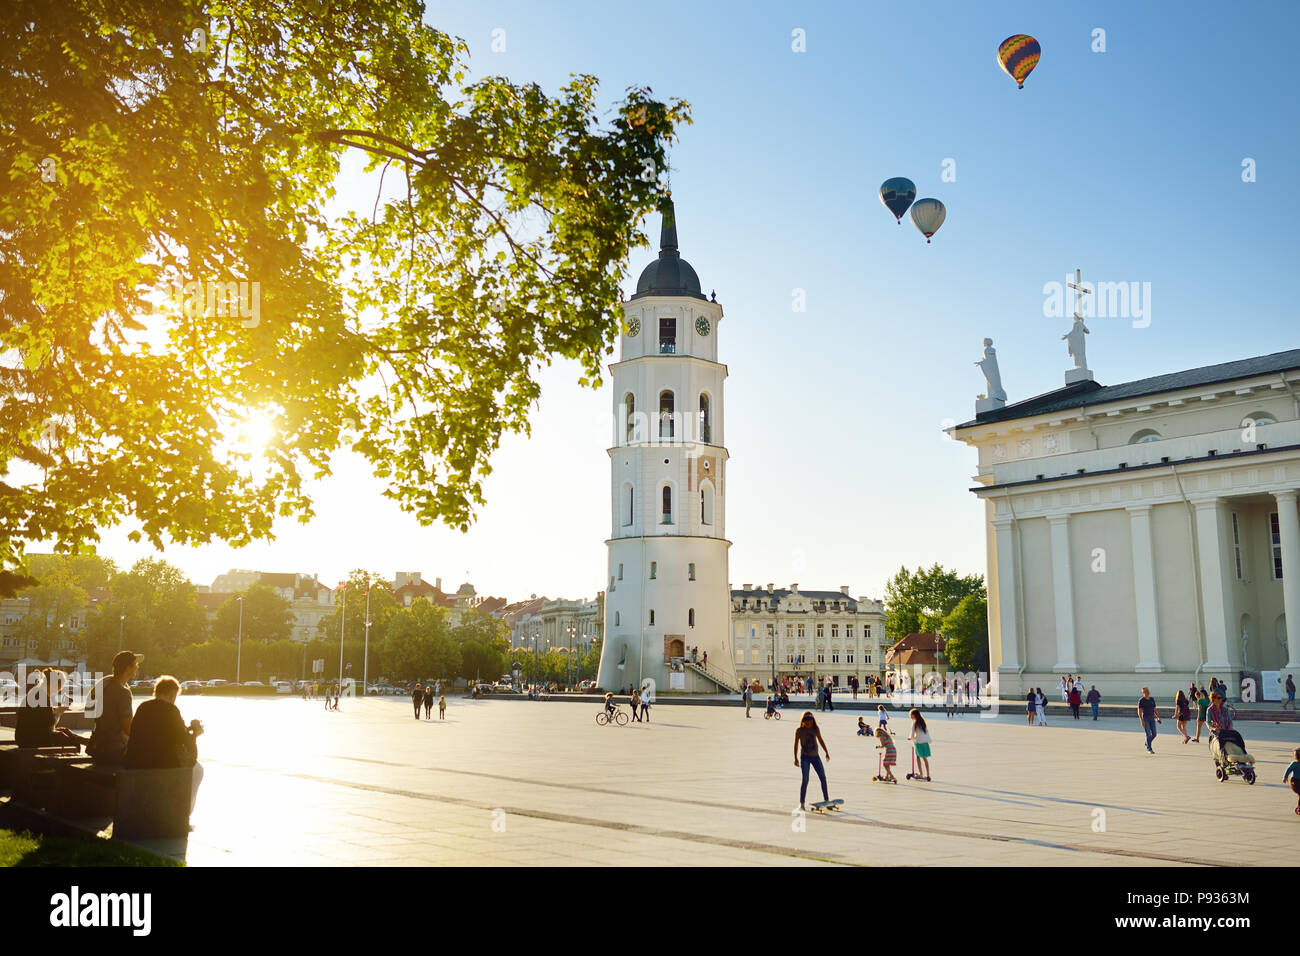 Platz der Kathedrale, dem Hauptplatz der Altstadt Vilnius, eine zentrale Position im öffentlichen Leben der Stadt, gelegen, da es an der Kreuzung der Stadt main ist Stockfoto